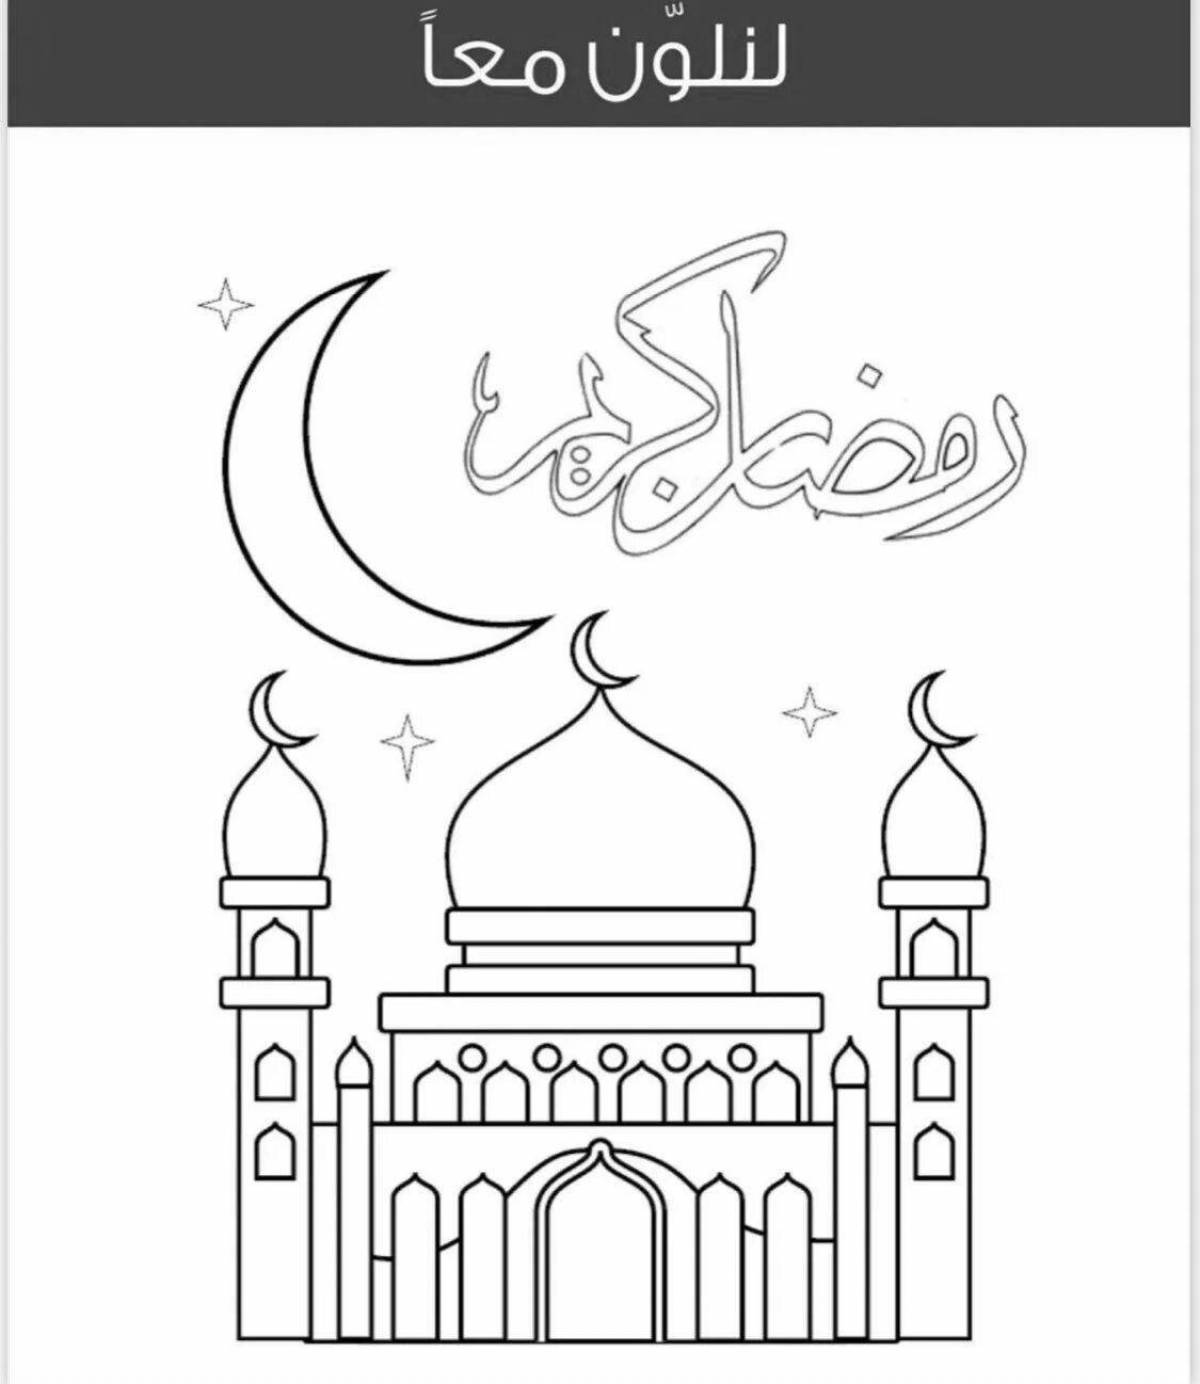 Playful ramadan coloring book